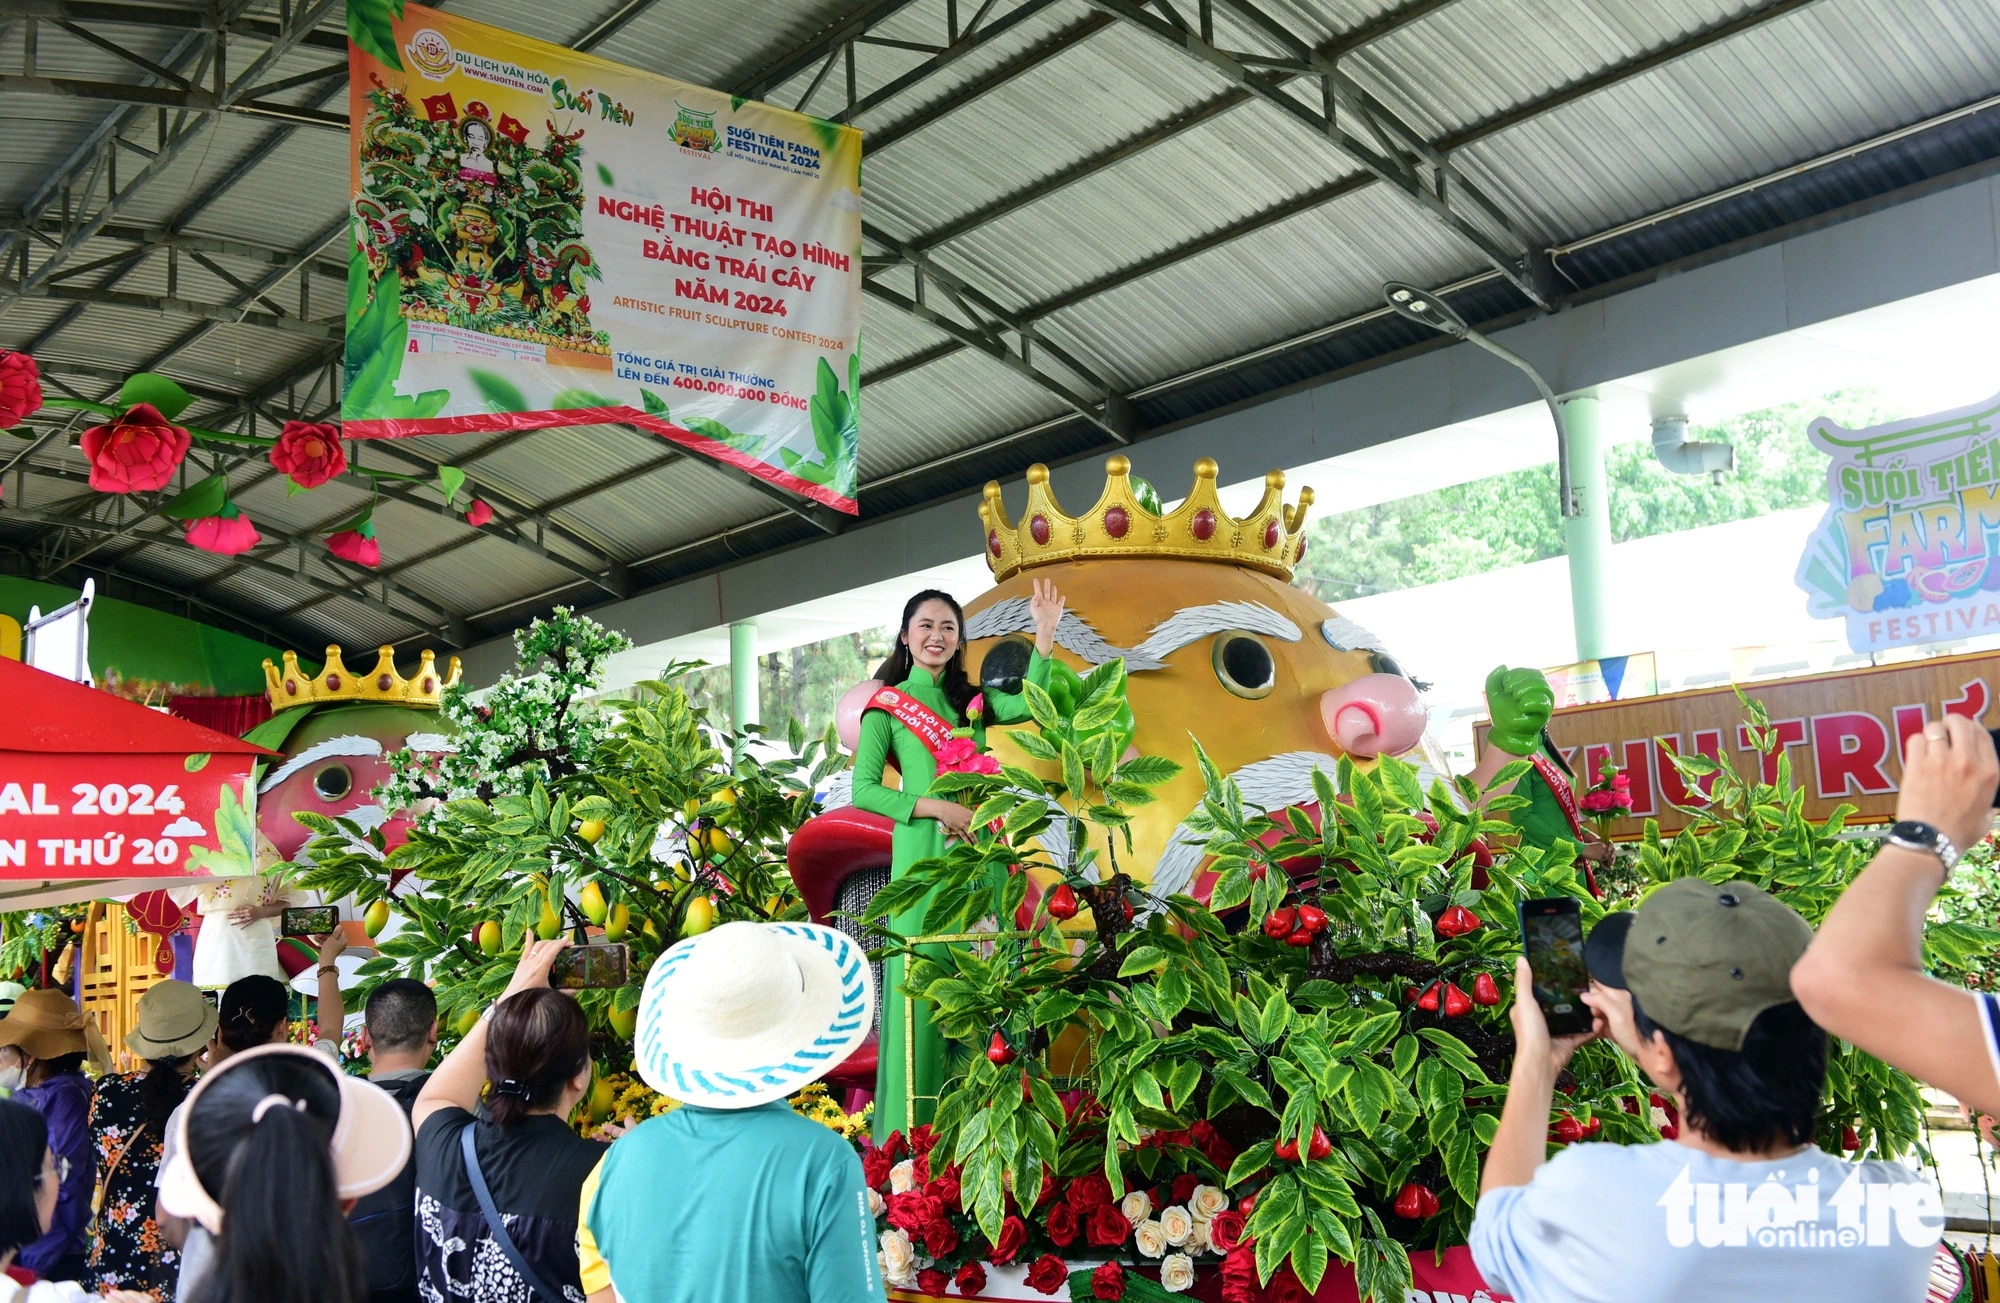 Diễu hành “Trái cây khổng lồ” với vũ điệu hè rộn ràng của những nàng tiên hoa - thần quả